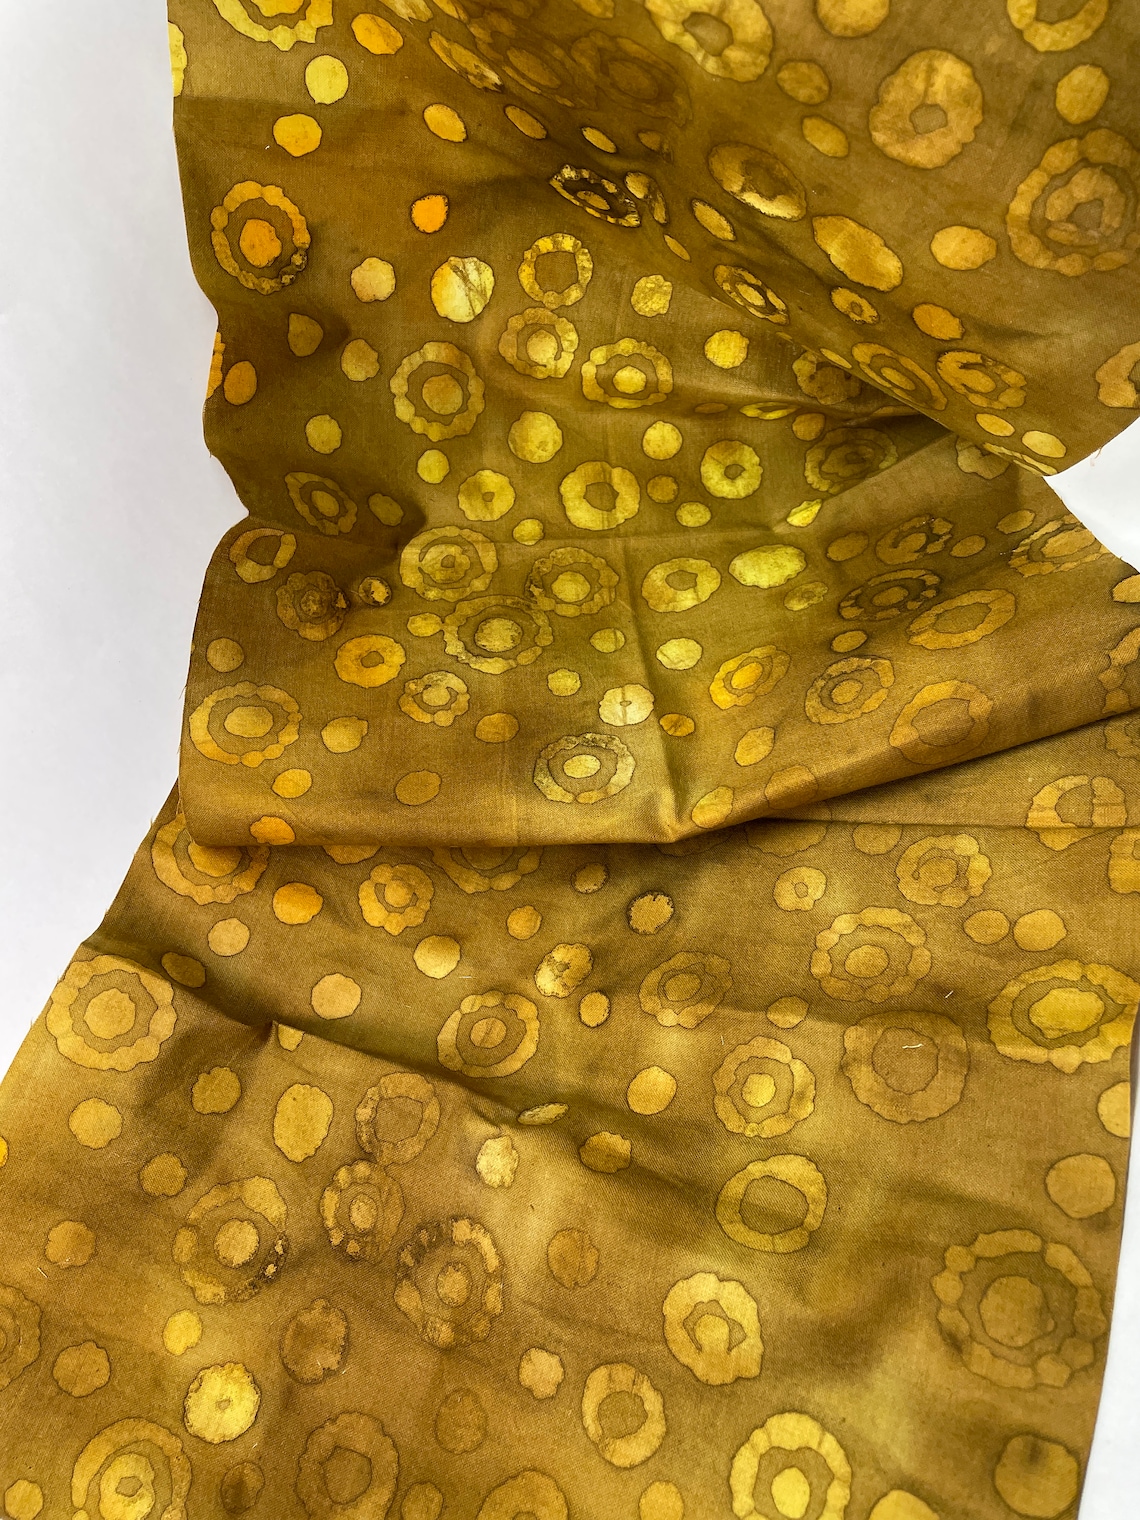 Gold Yellow Batik Piece 31 x 10.5 | Etsy